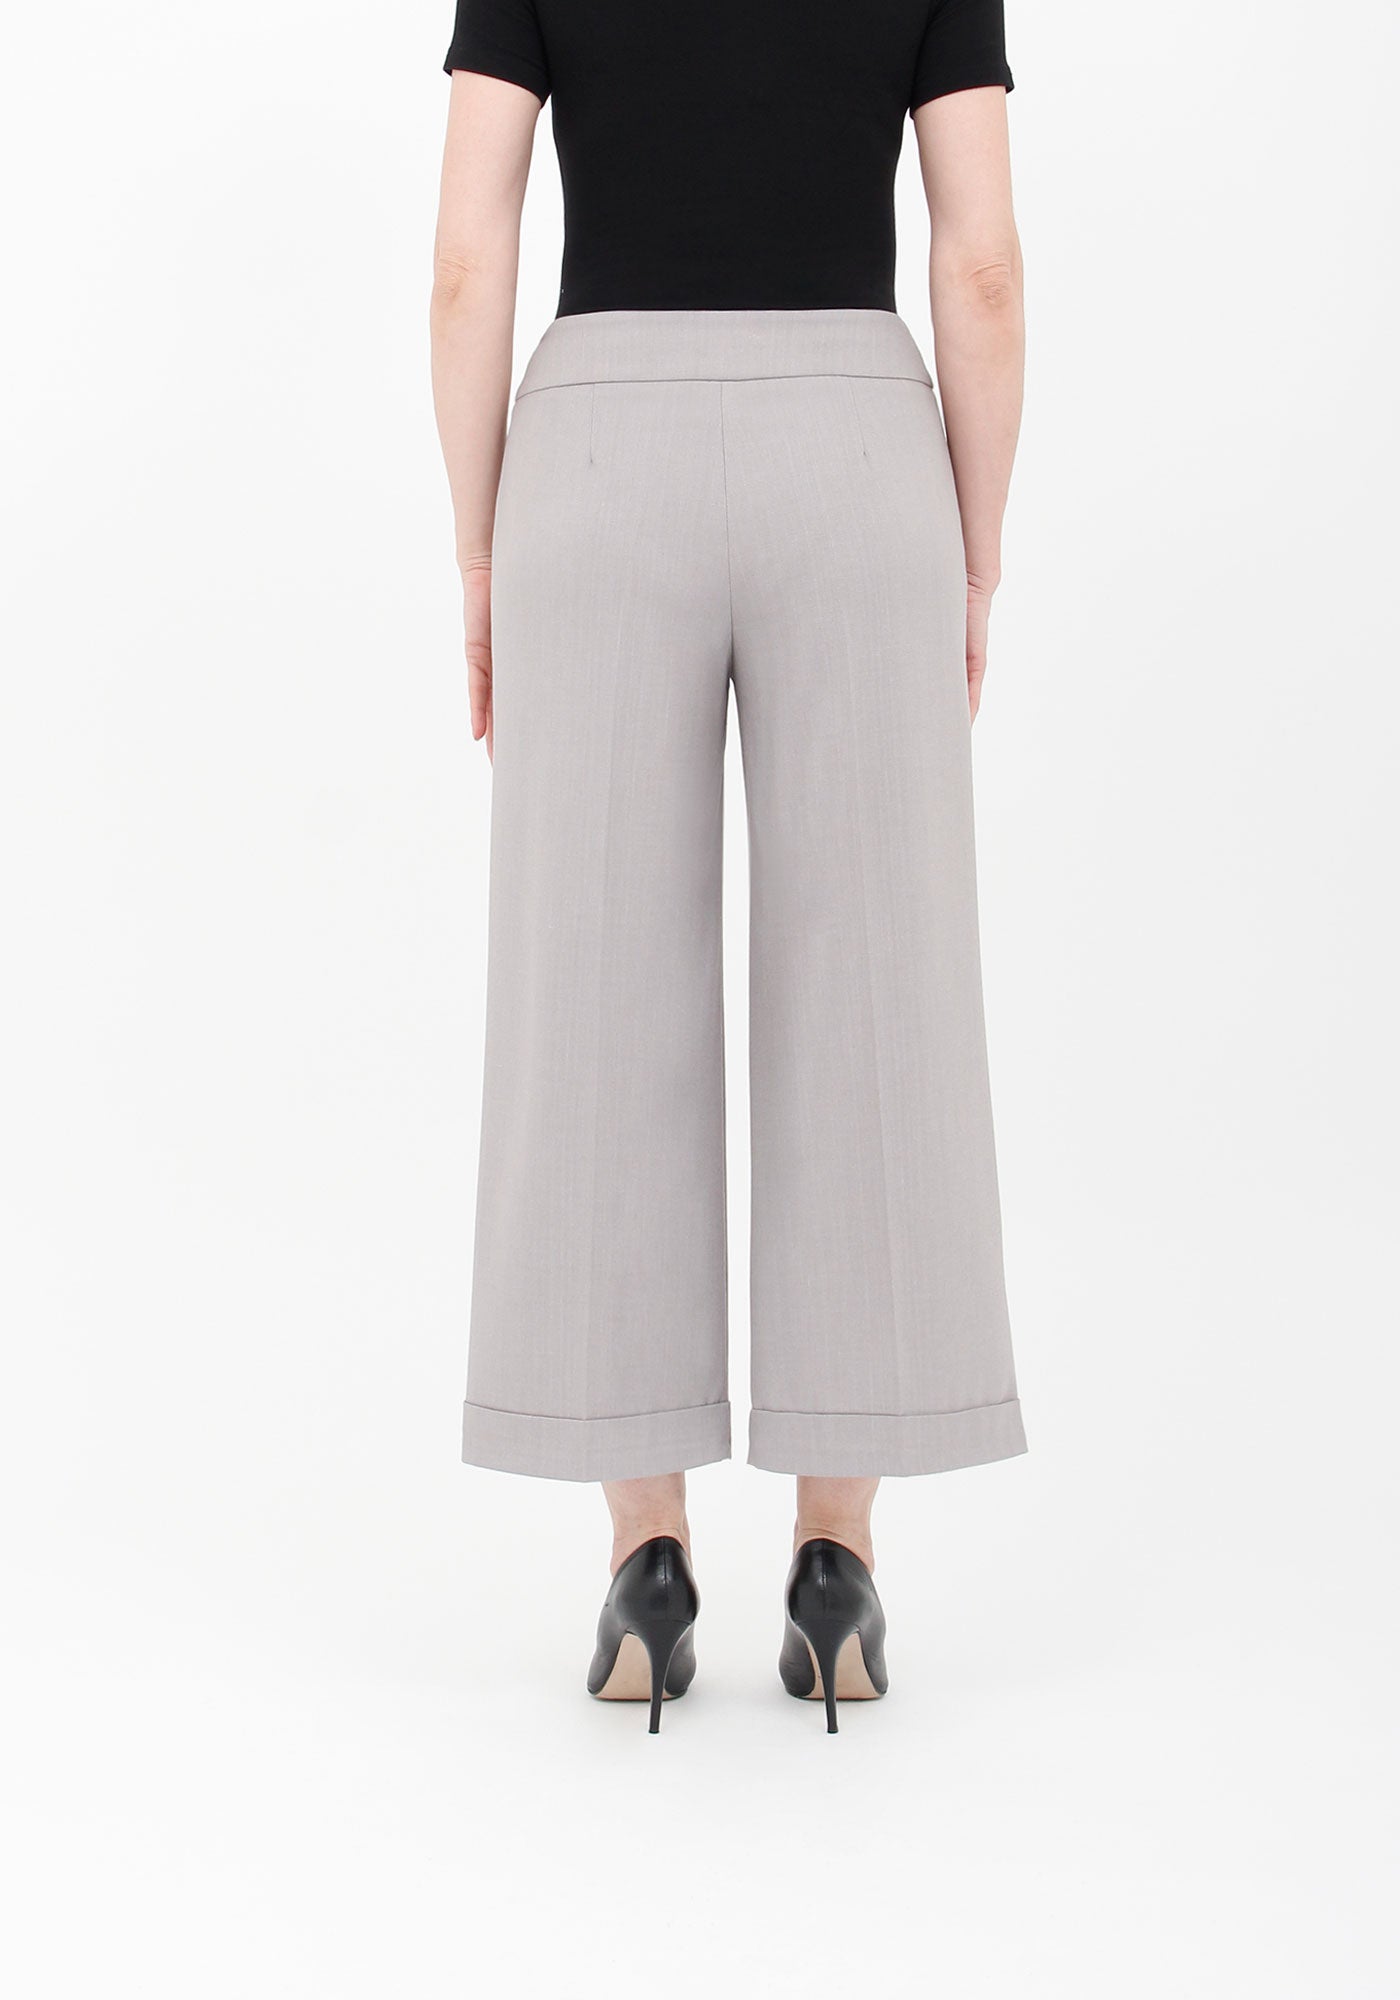 Women's Grey Wide Leg Dress Pants - High Waist, Versatile and Chic